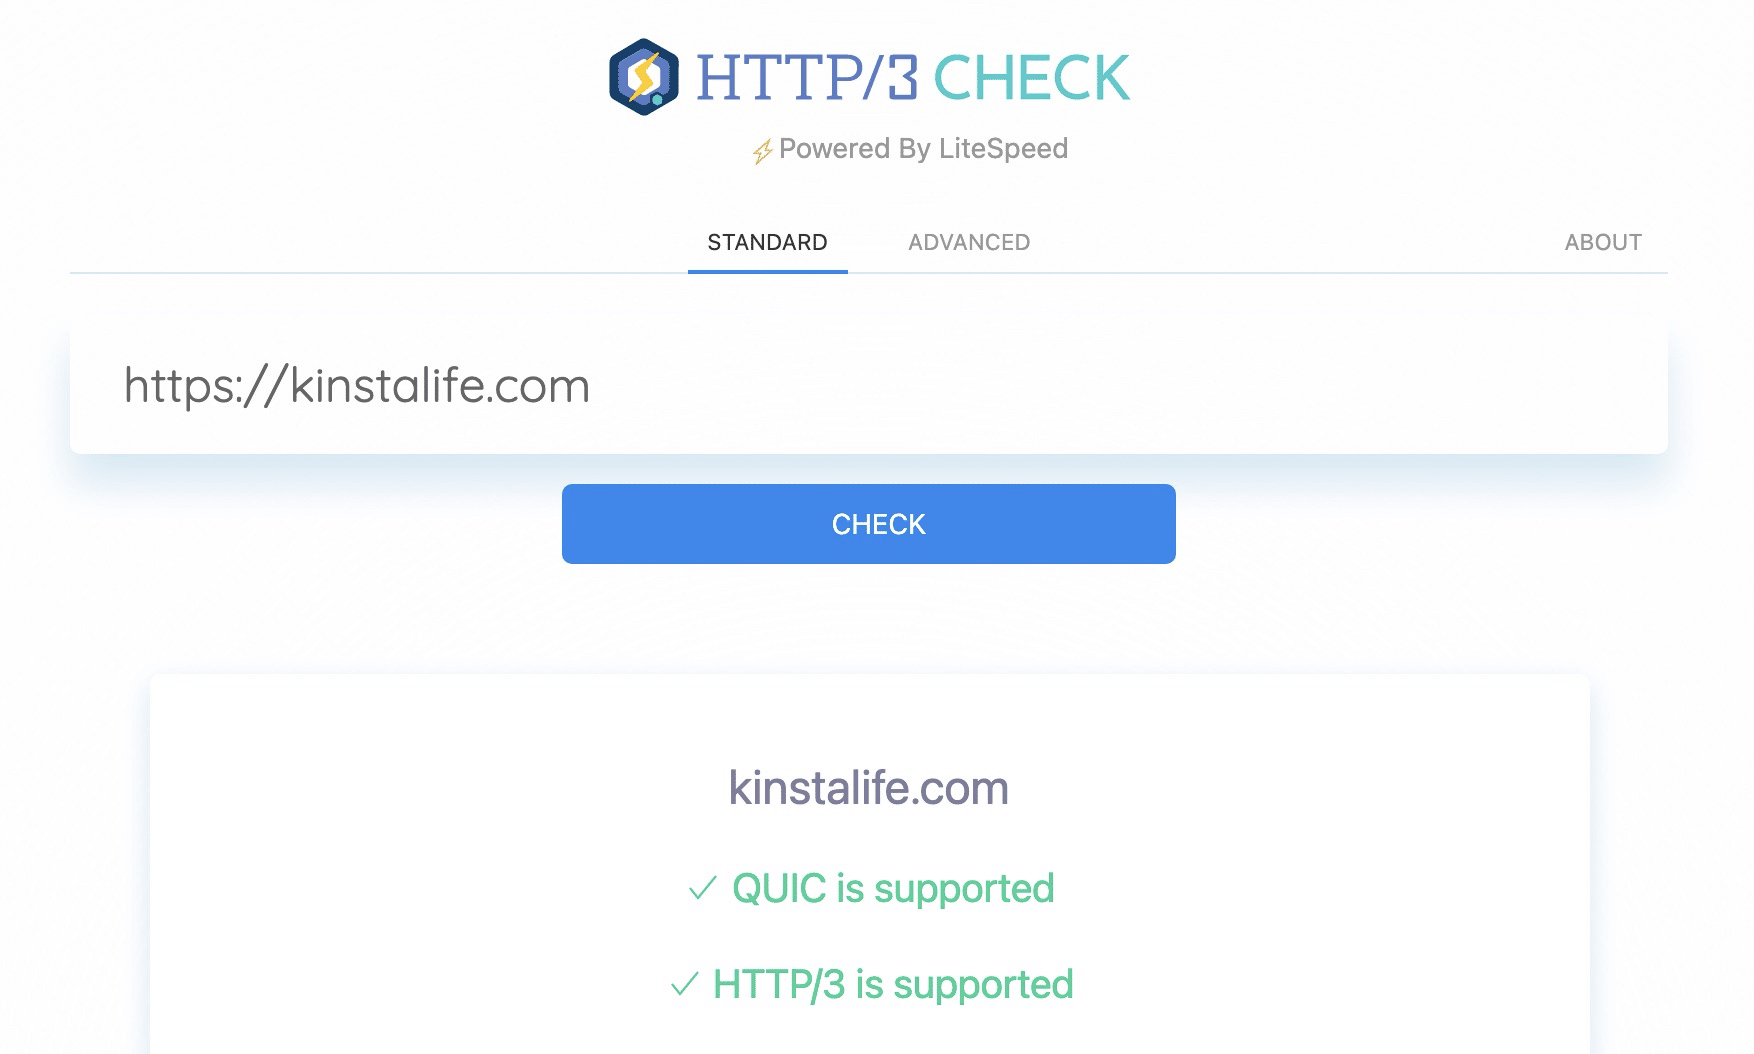 Sites die op Kinsta worden gehost, ondersteunen HTTP/3 voor snellere SSL handshakes.